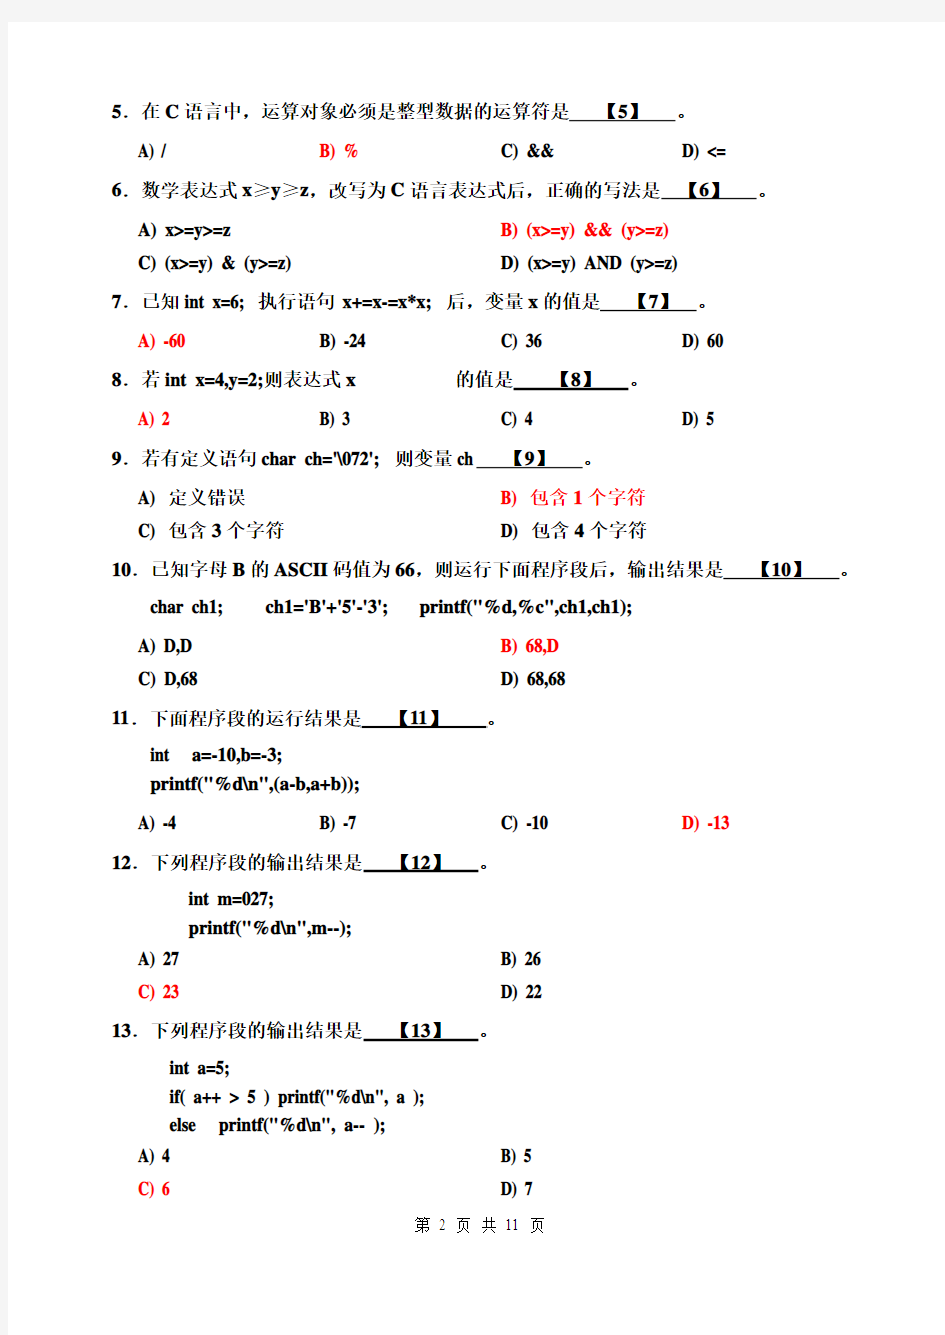 2009级C语言程序设计试卷_A(带答案,自动化2009级)